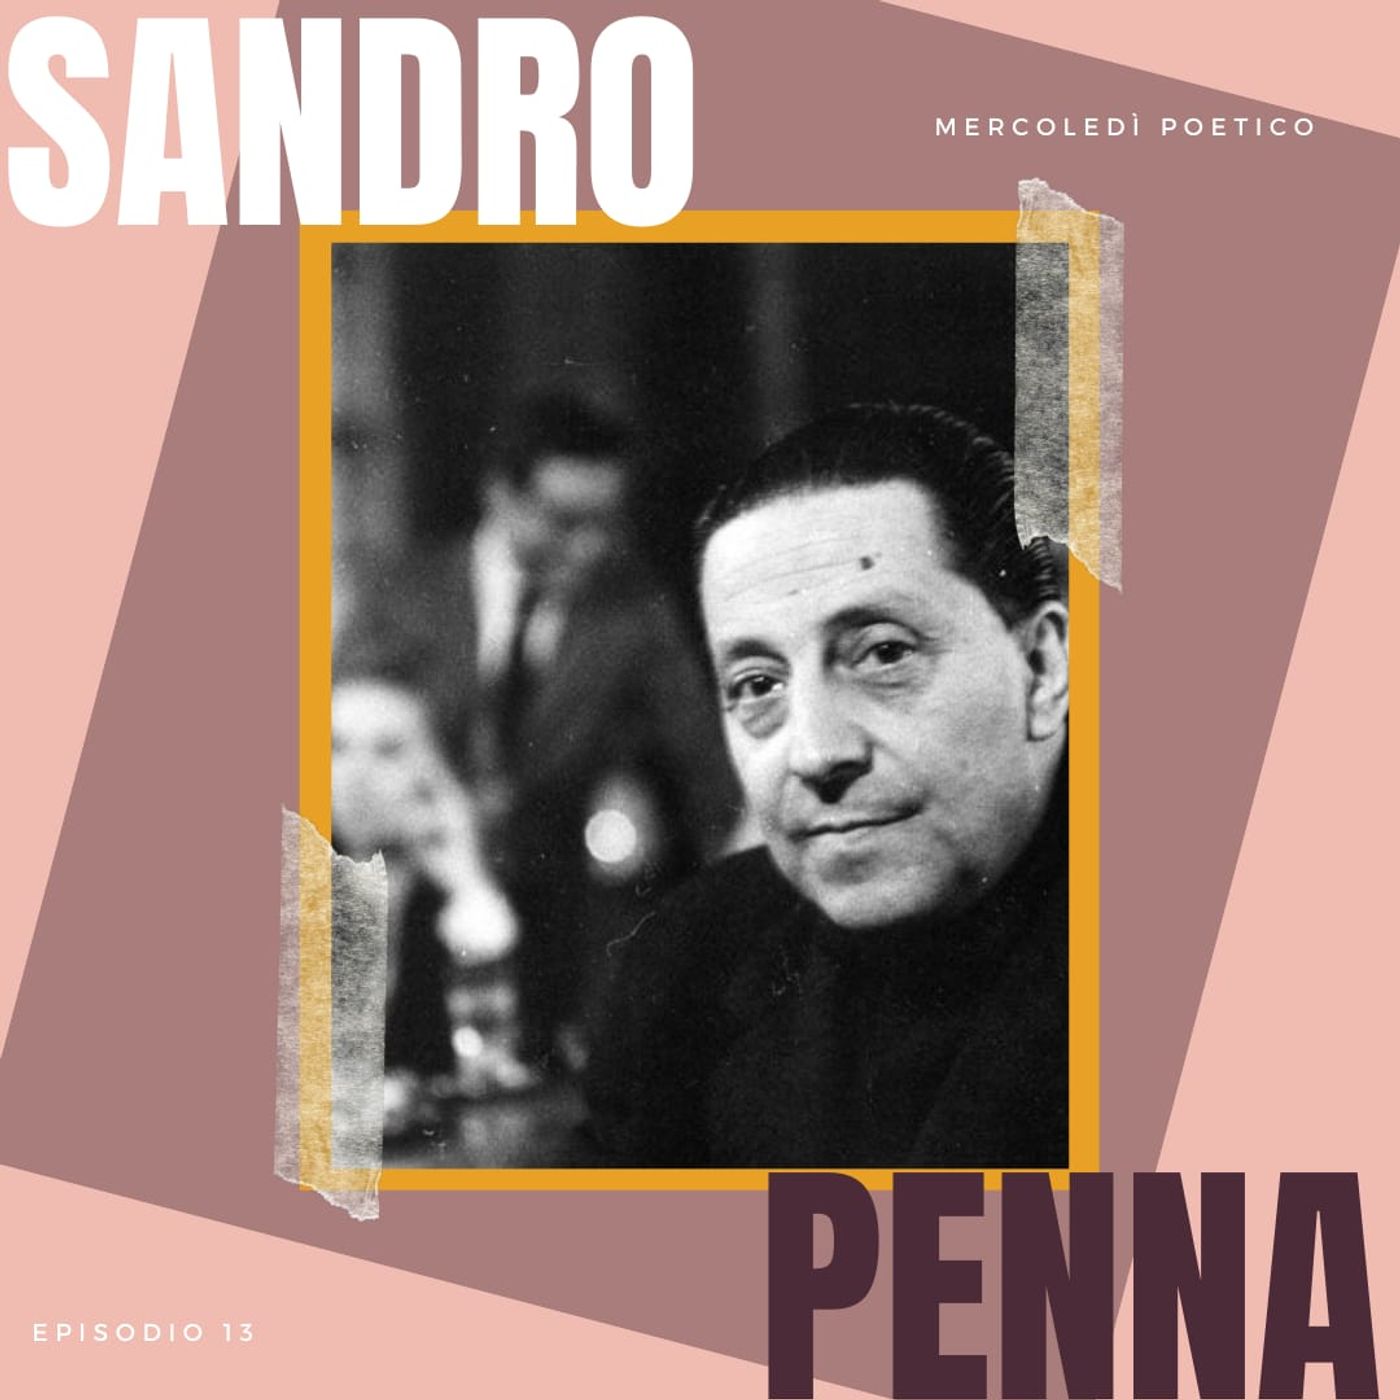 Mercoledì poetico - Ep. 13, Sandro Penna